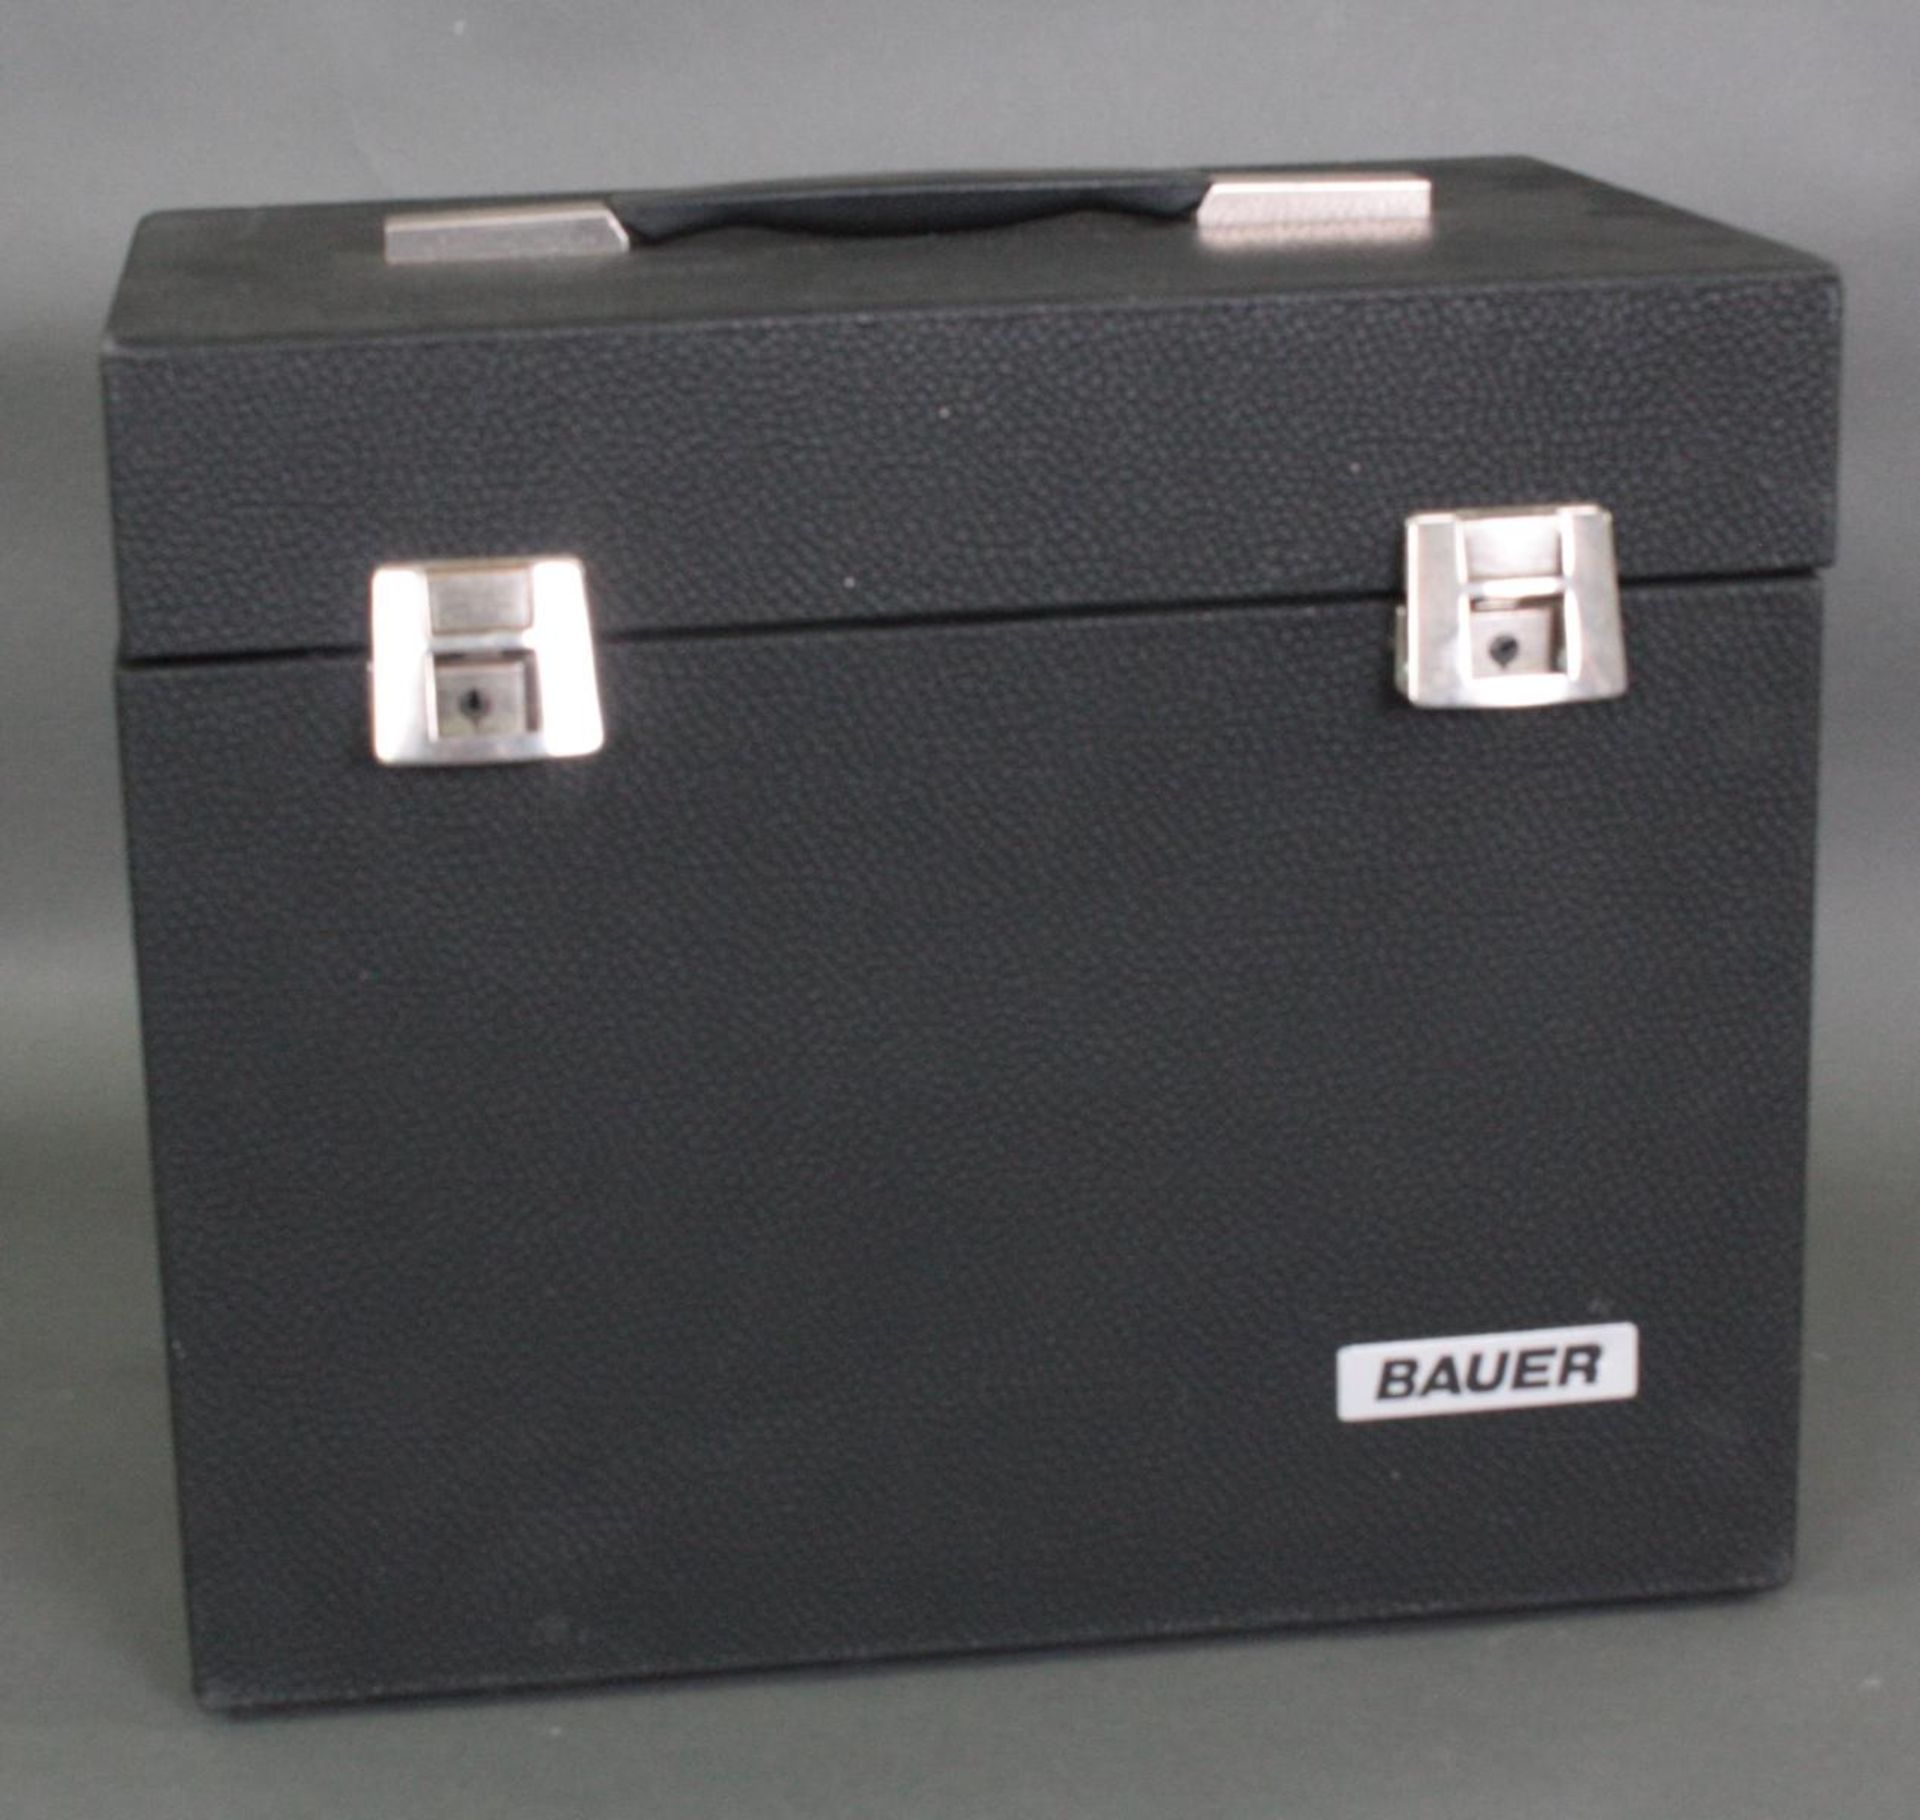 Super 8 Tonfilmprojektor Bauer T50 Sound-Royal - Bild 4 aus 4